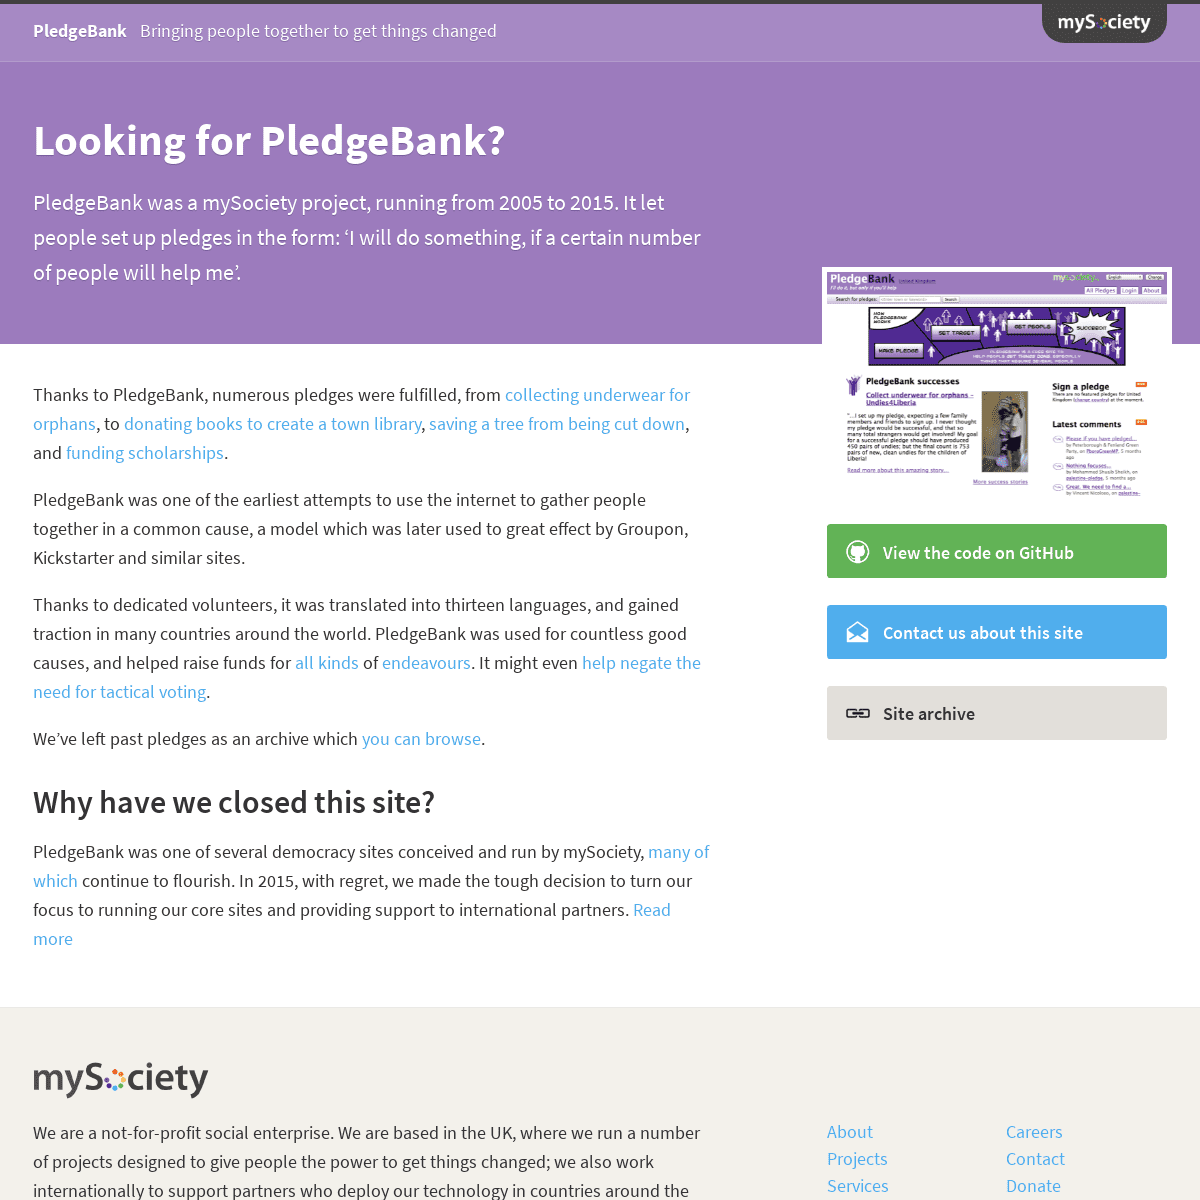 A complete backup of https://pledgebank.com